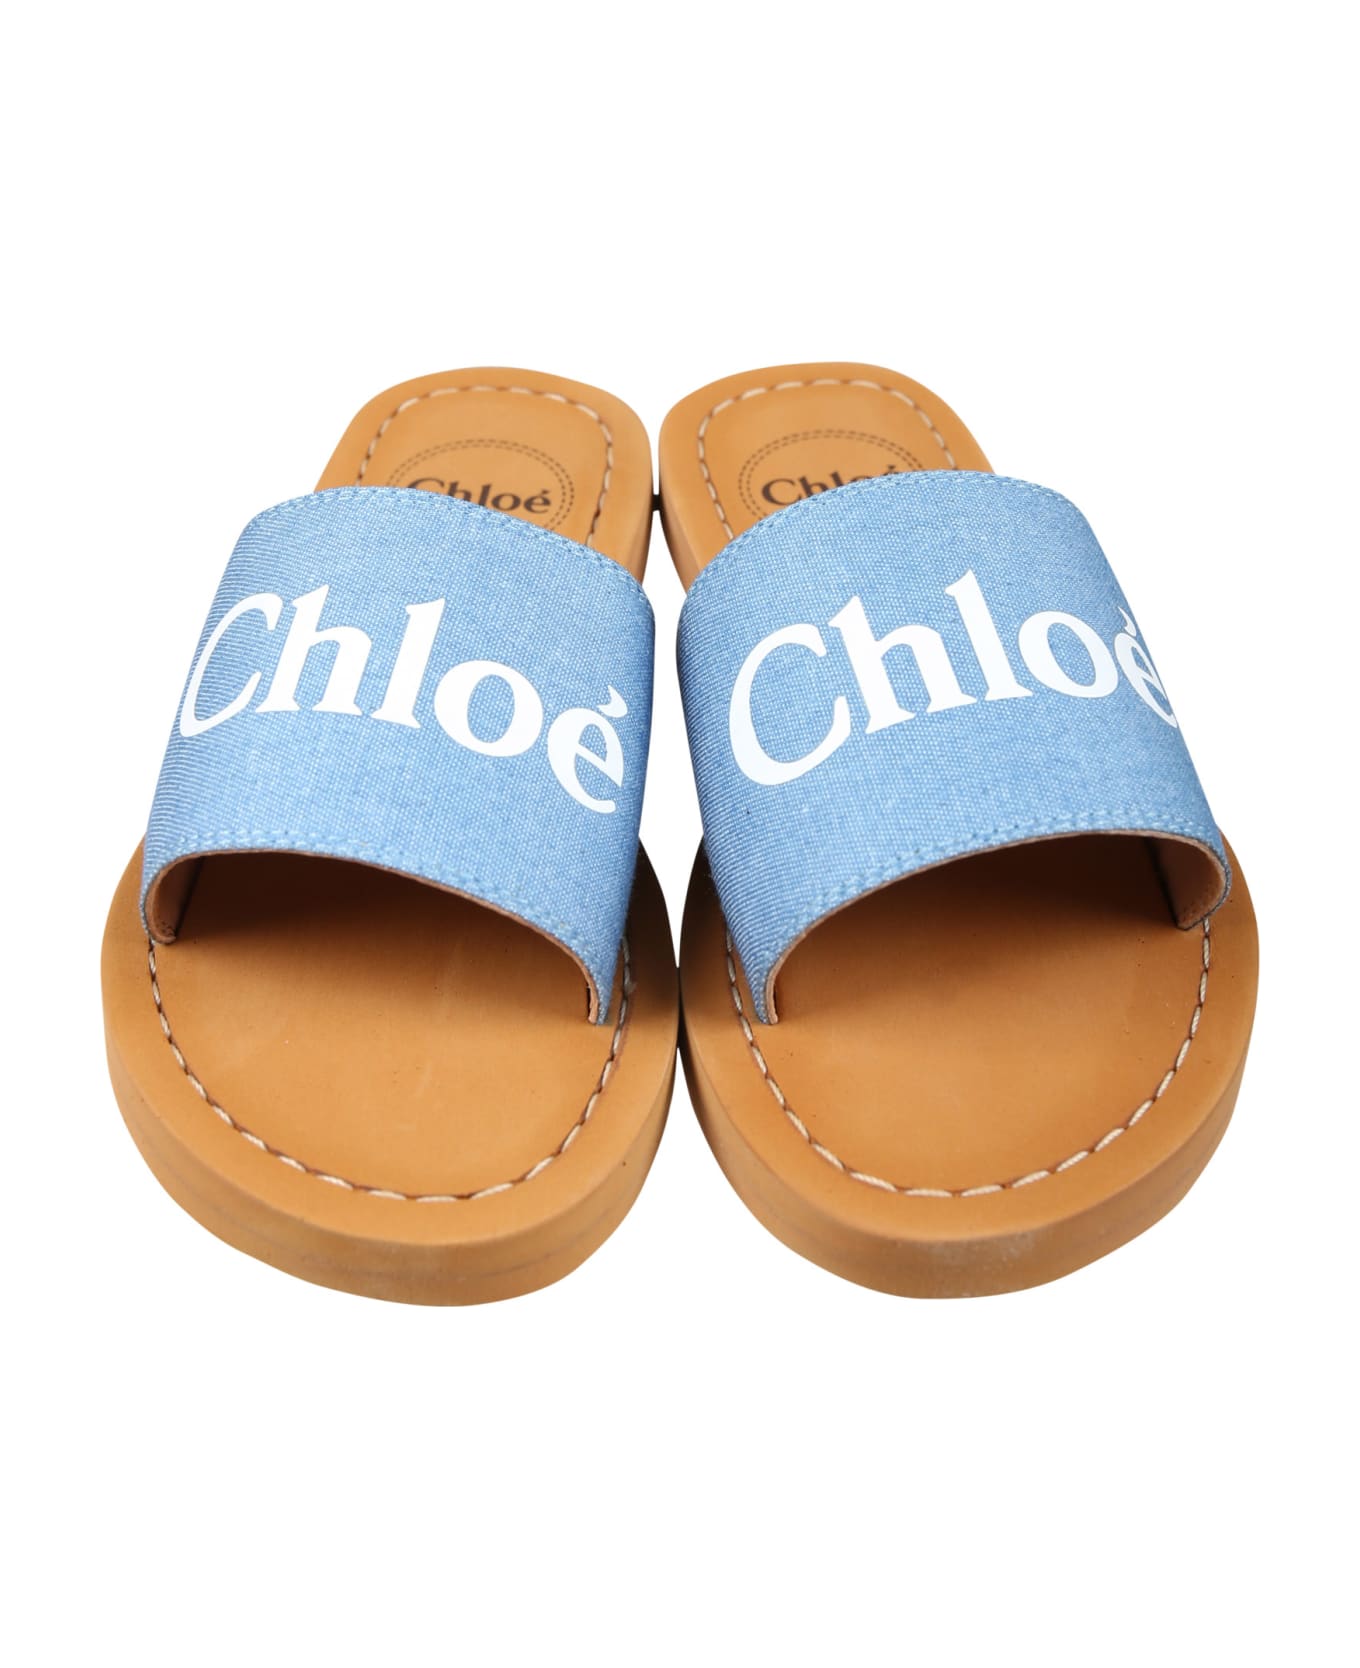 Chloé Denim Slippers For Girl With Logo - Denim